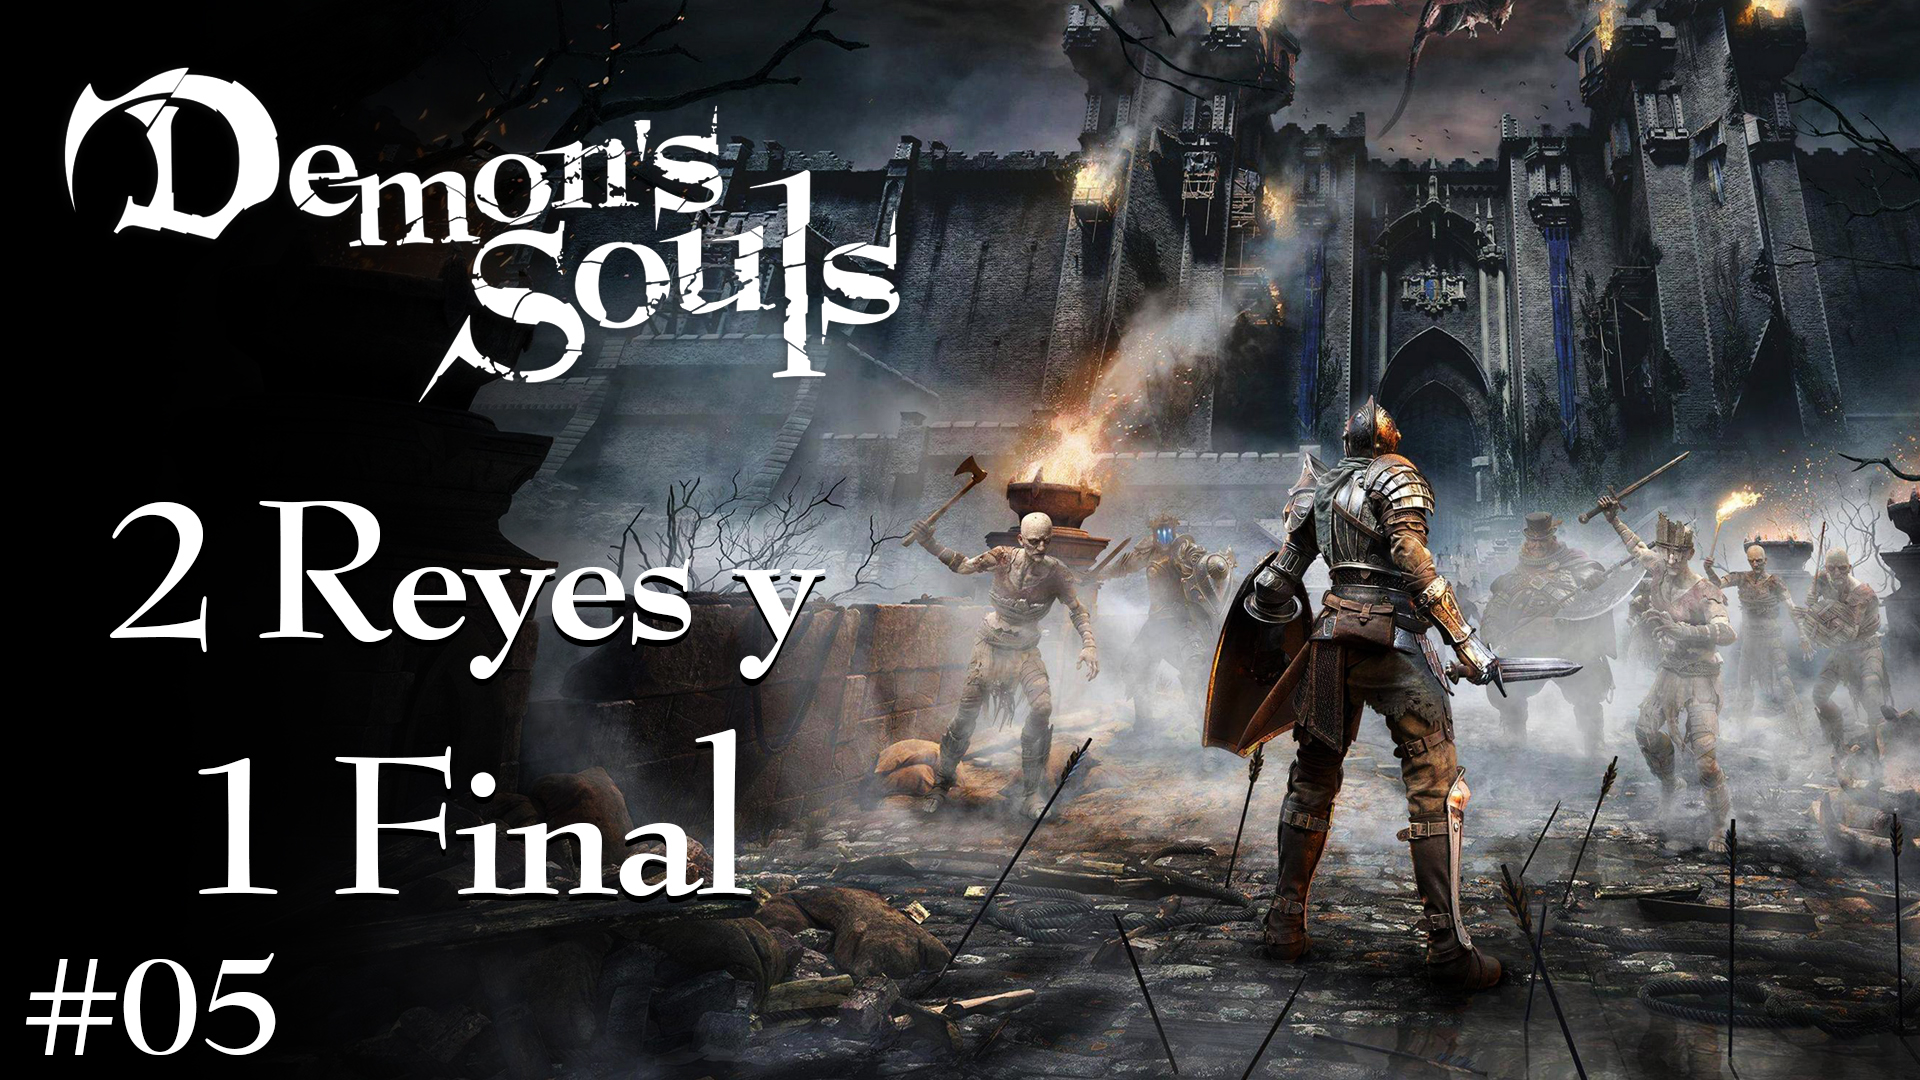 Serie Demon’s Souls #5 – 2 Reyes y 1 Final